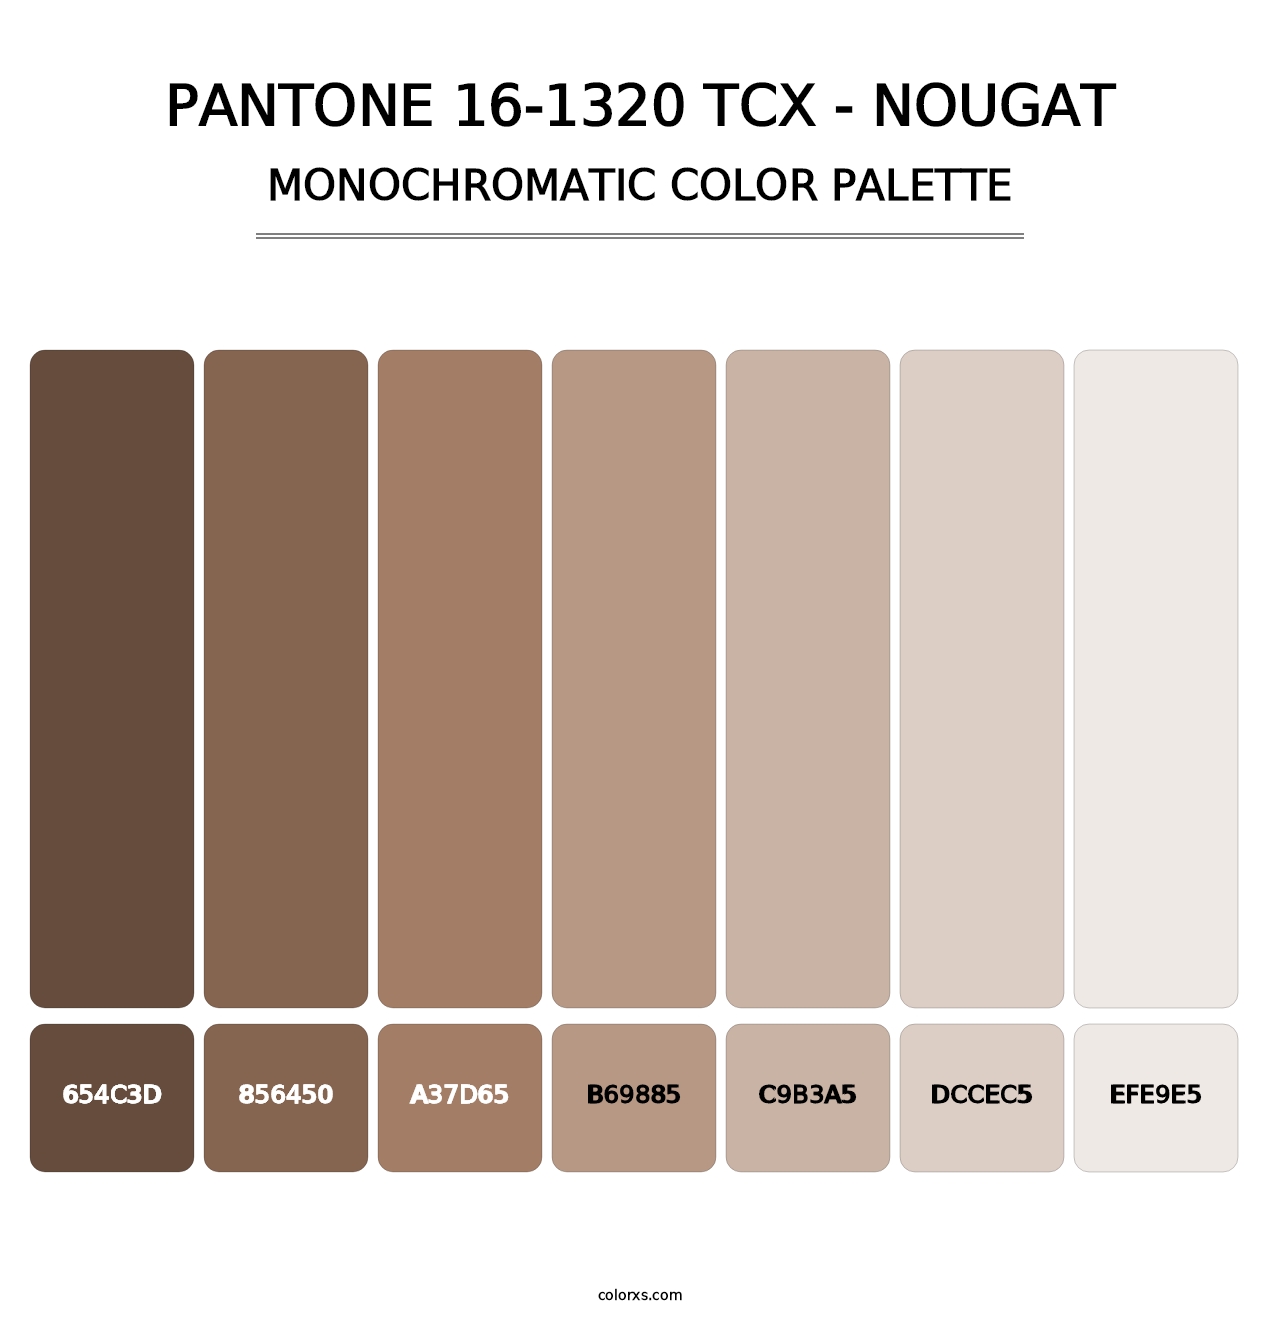 PANTONE 16-1320 TCX - Nougat - Monochromatic Color Palette